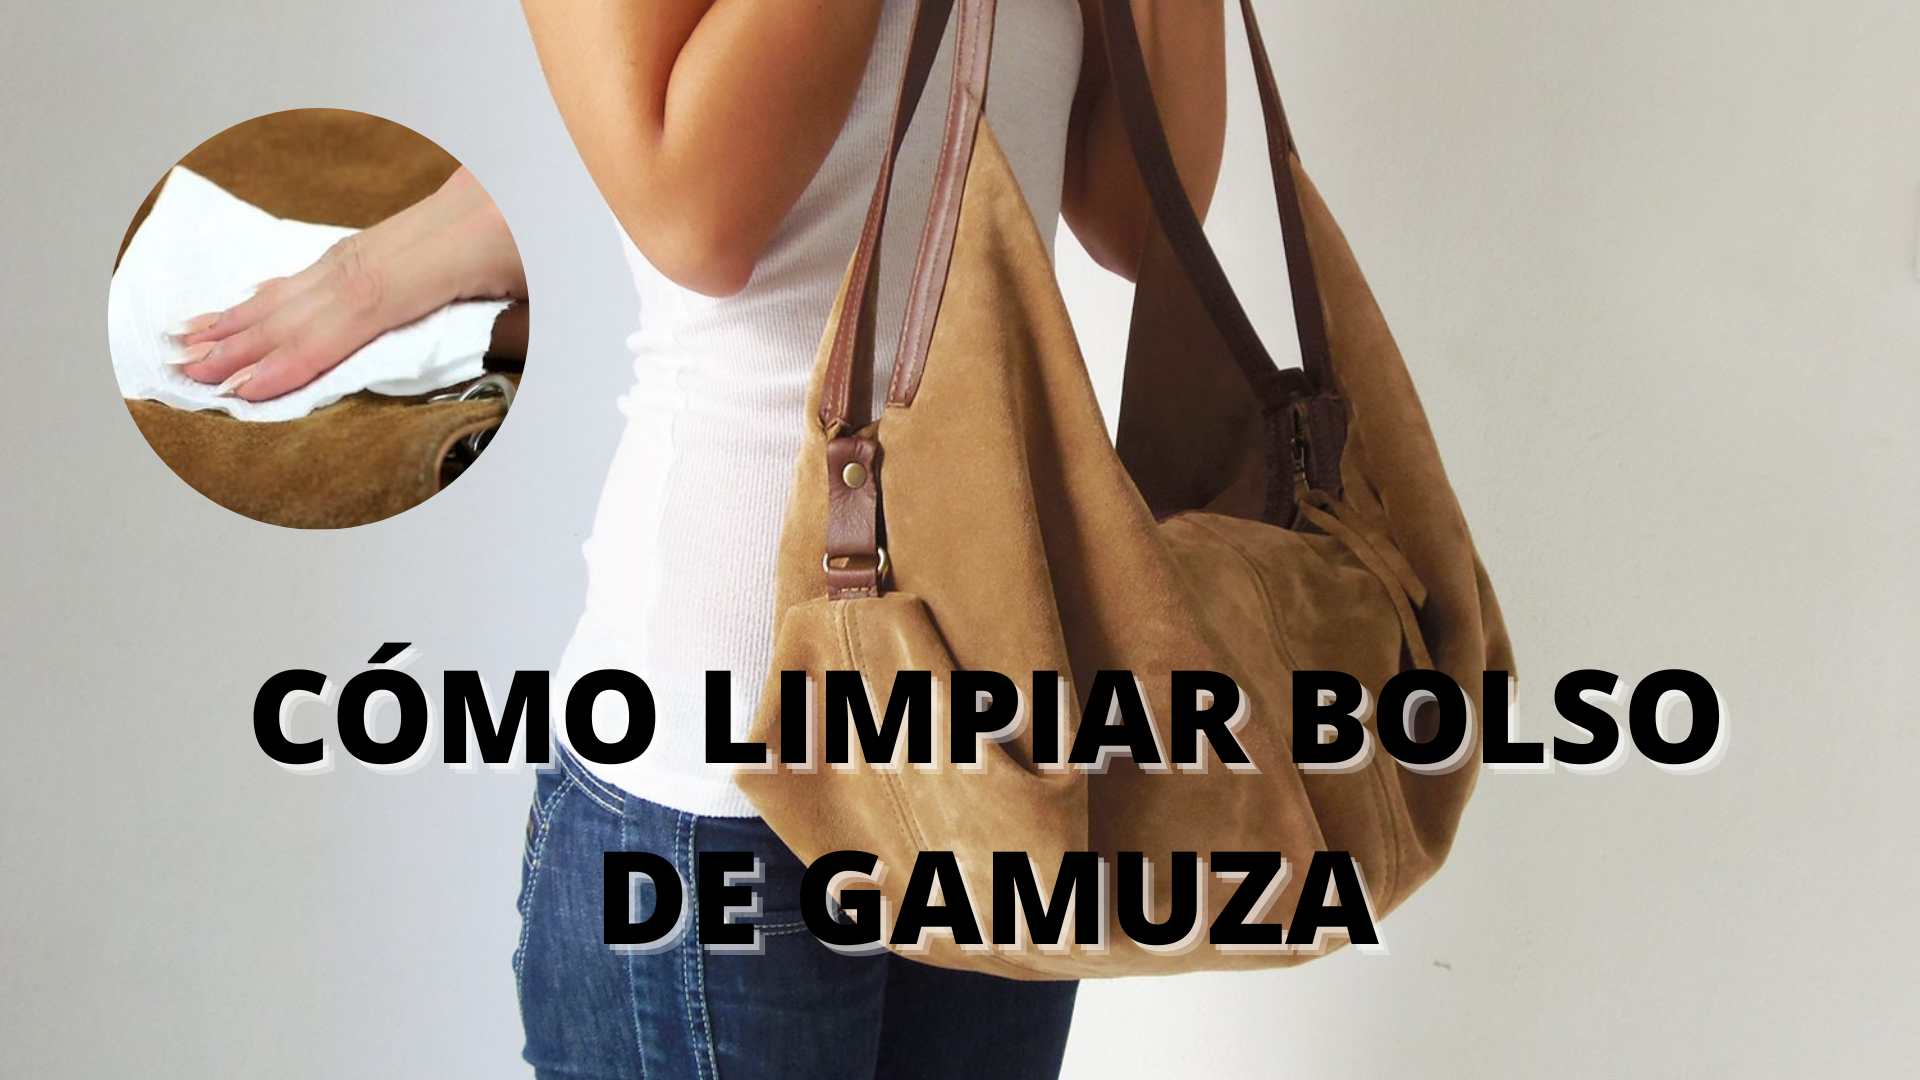 Pasto Memorizar Collar Cómo limpiar bolso de gamuza - Mendoza Post